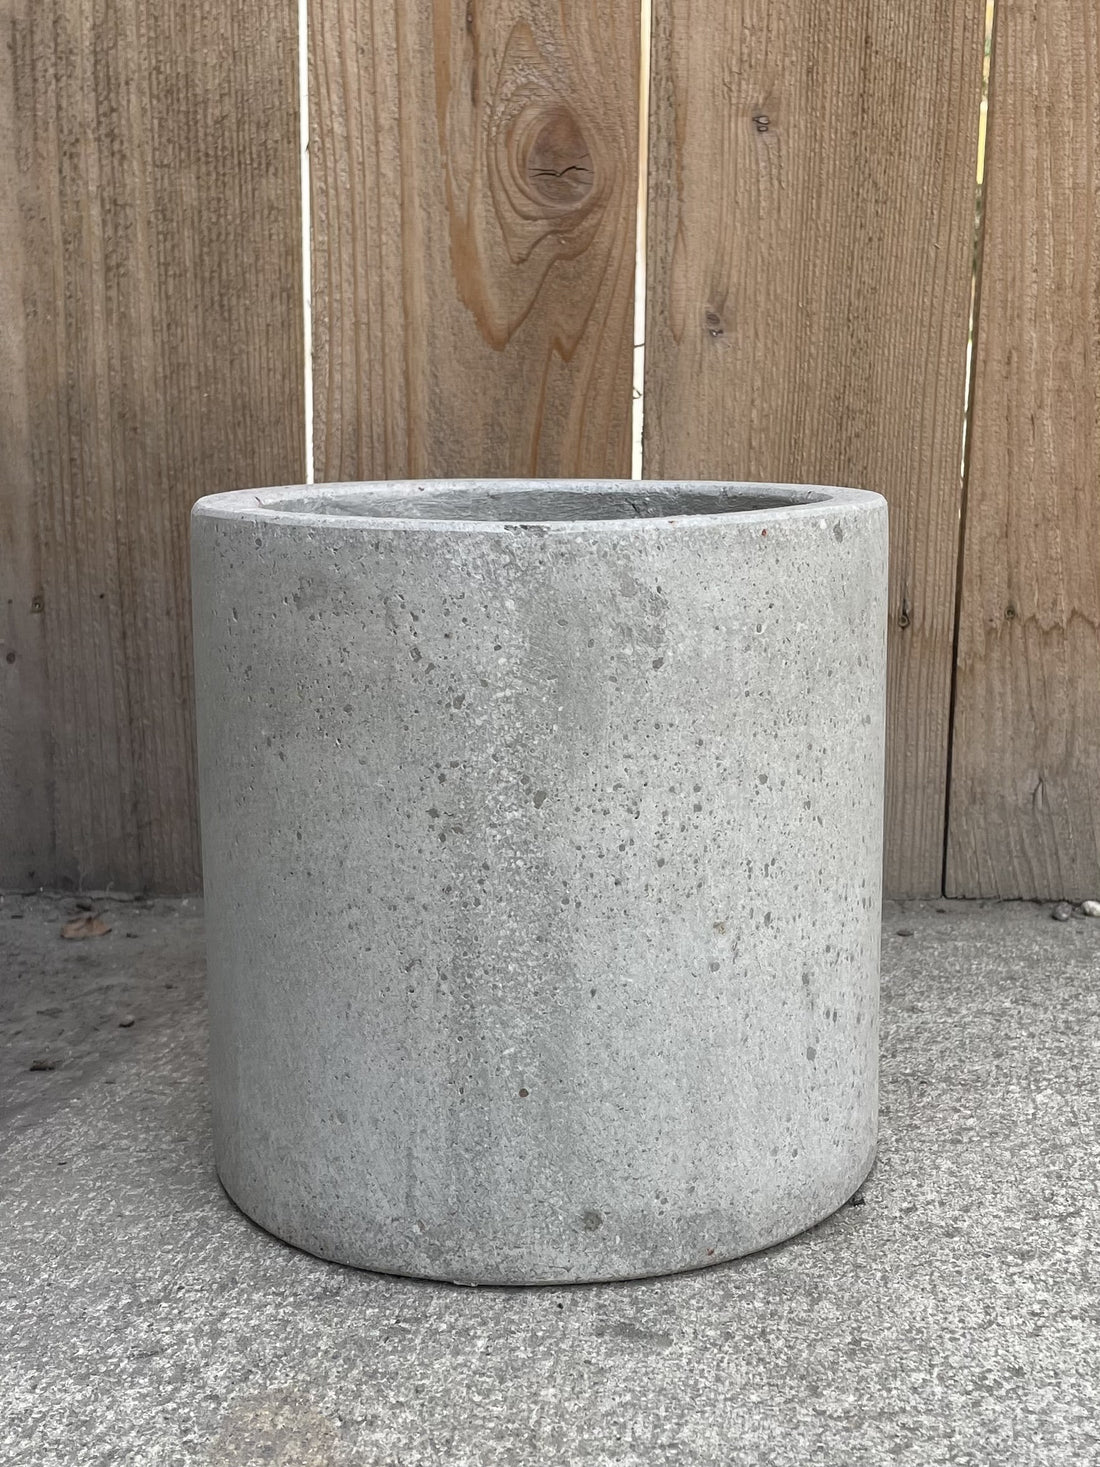 Concrete composite Cylinder Pot 8 x 8"